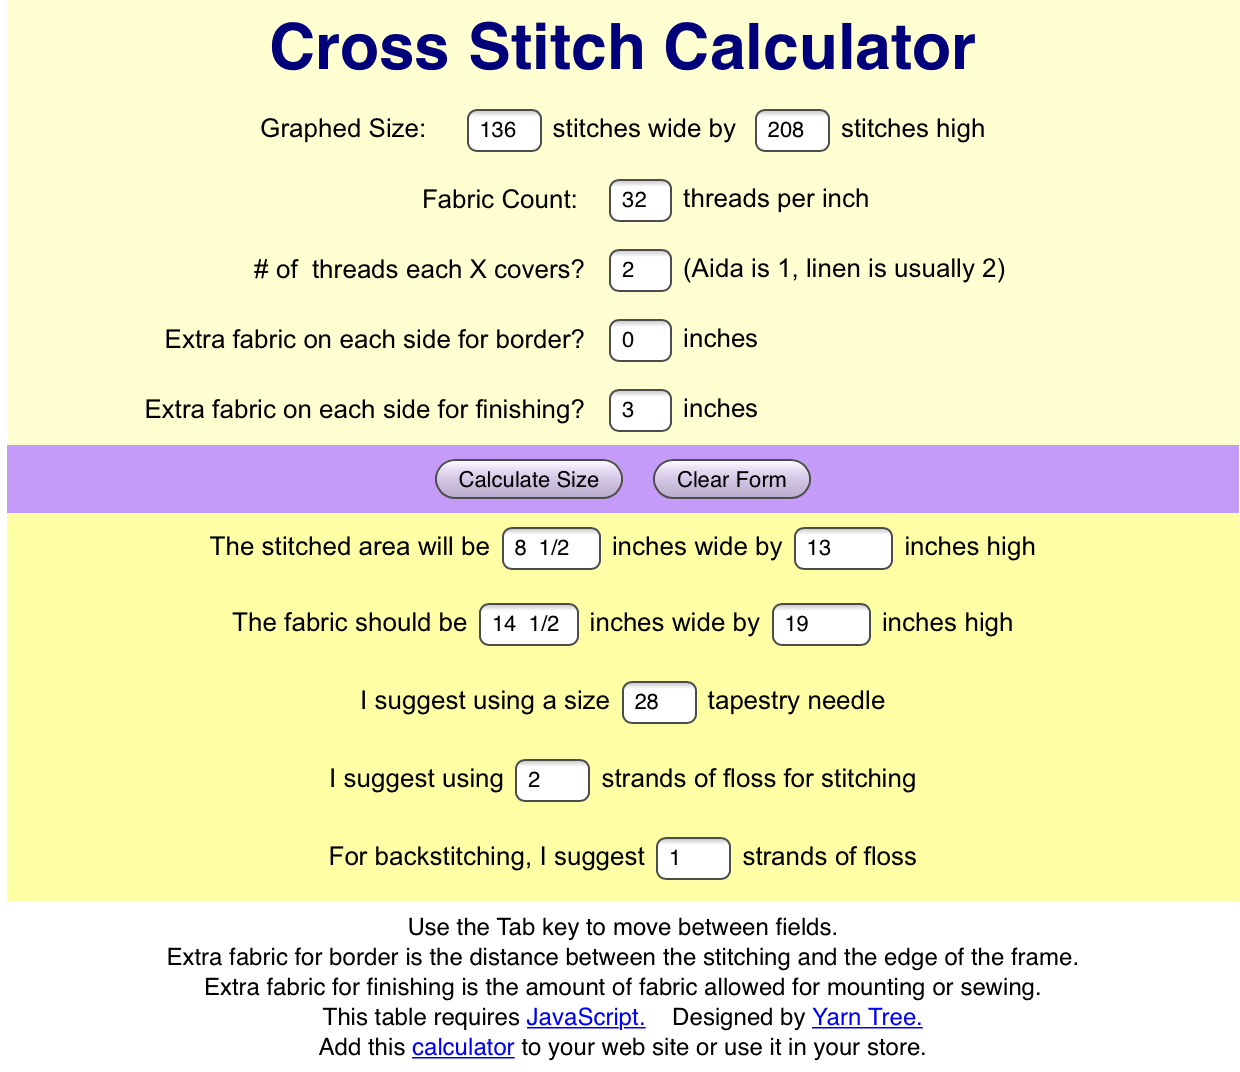 Cross Stitch Calculator